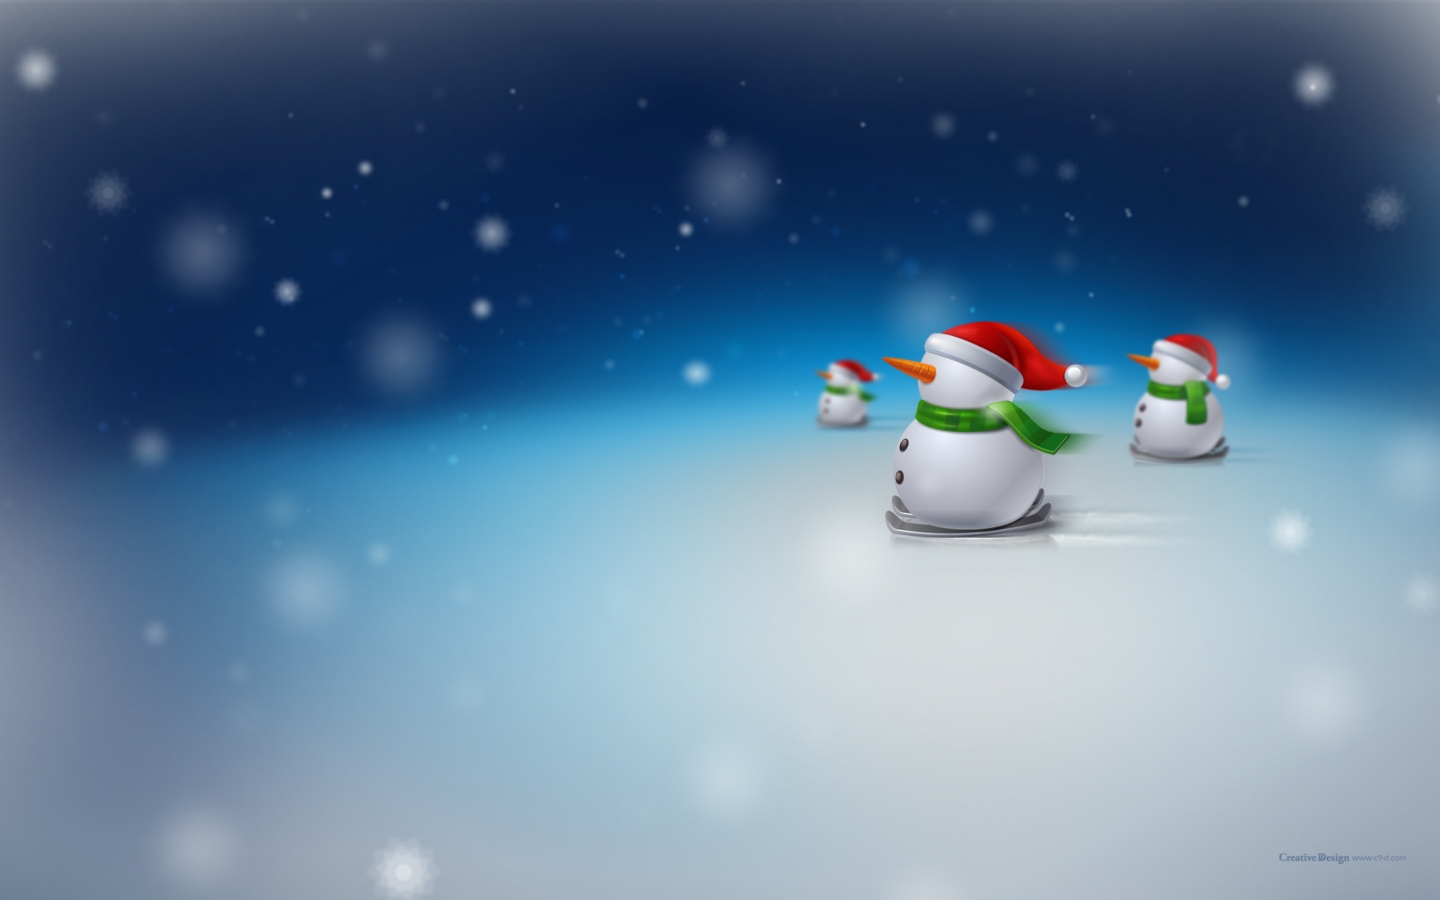 Snowman for 1440 x 900 widescreen resolution